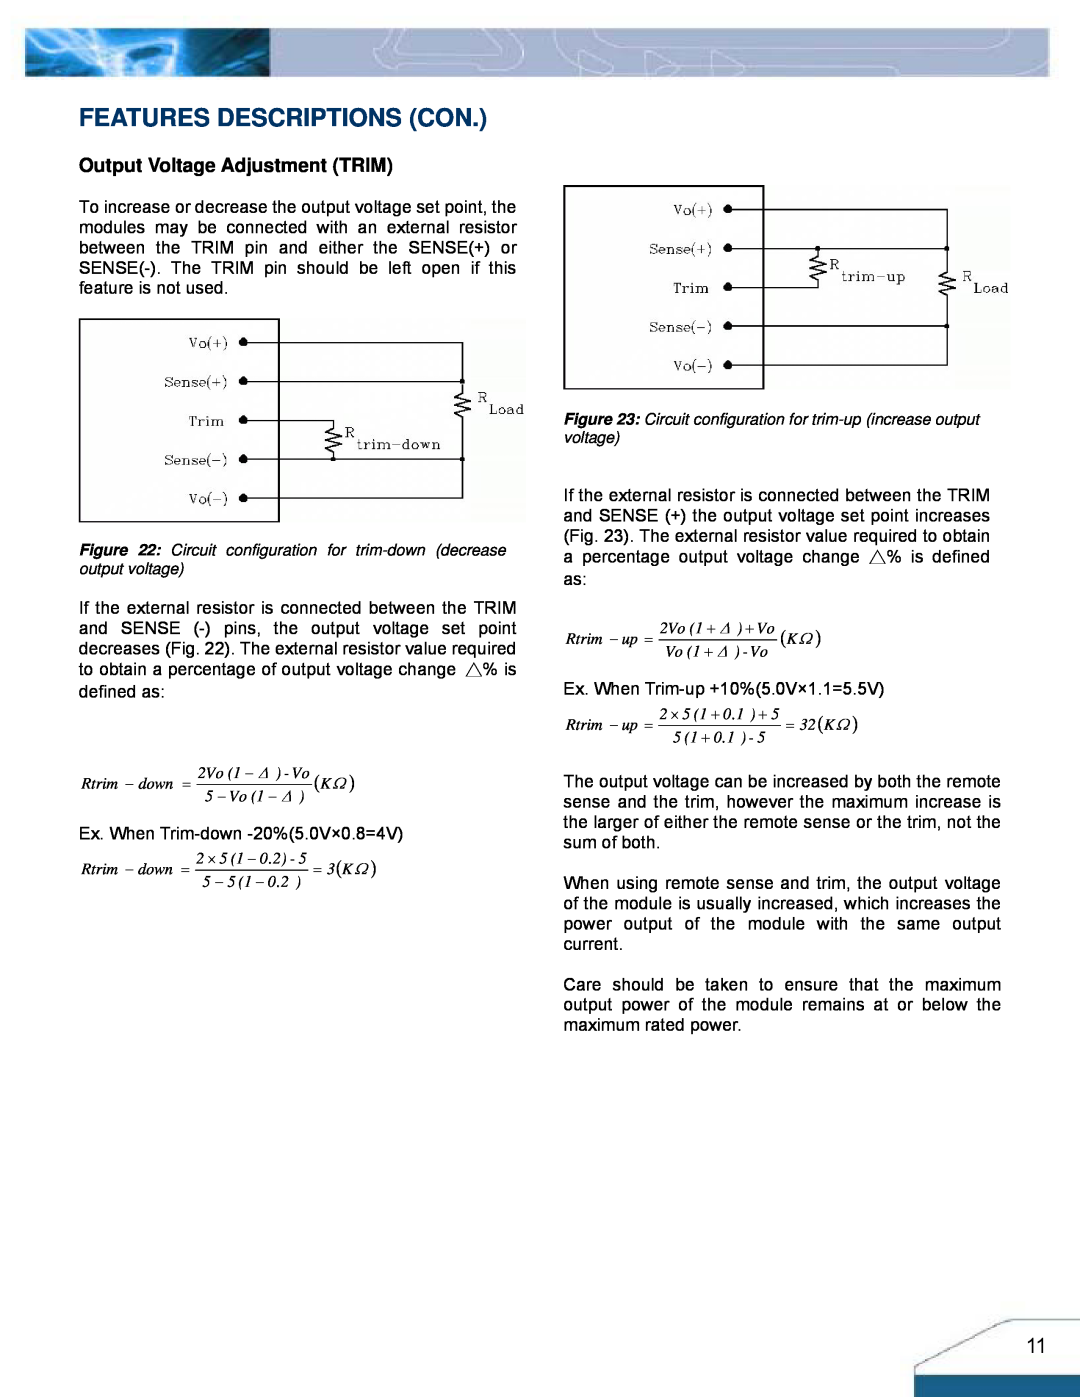 Delta Electronics Series H48SV manual Features Descriptions Con, Output Voltage Adjustment TRIM 